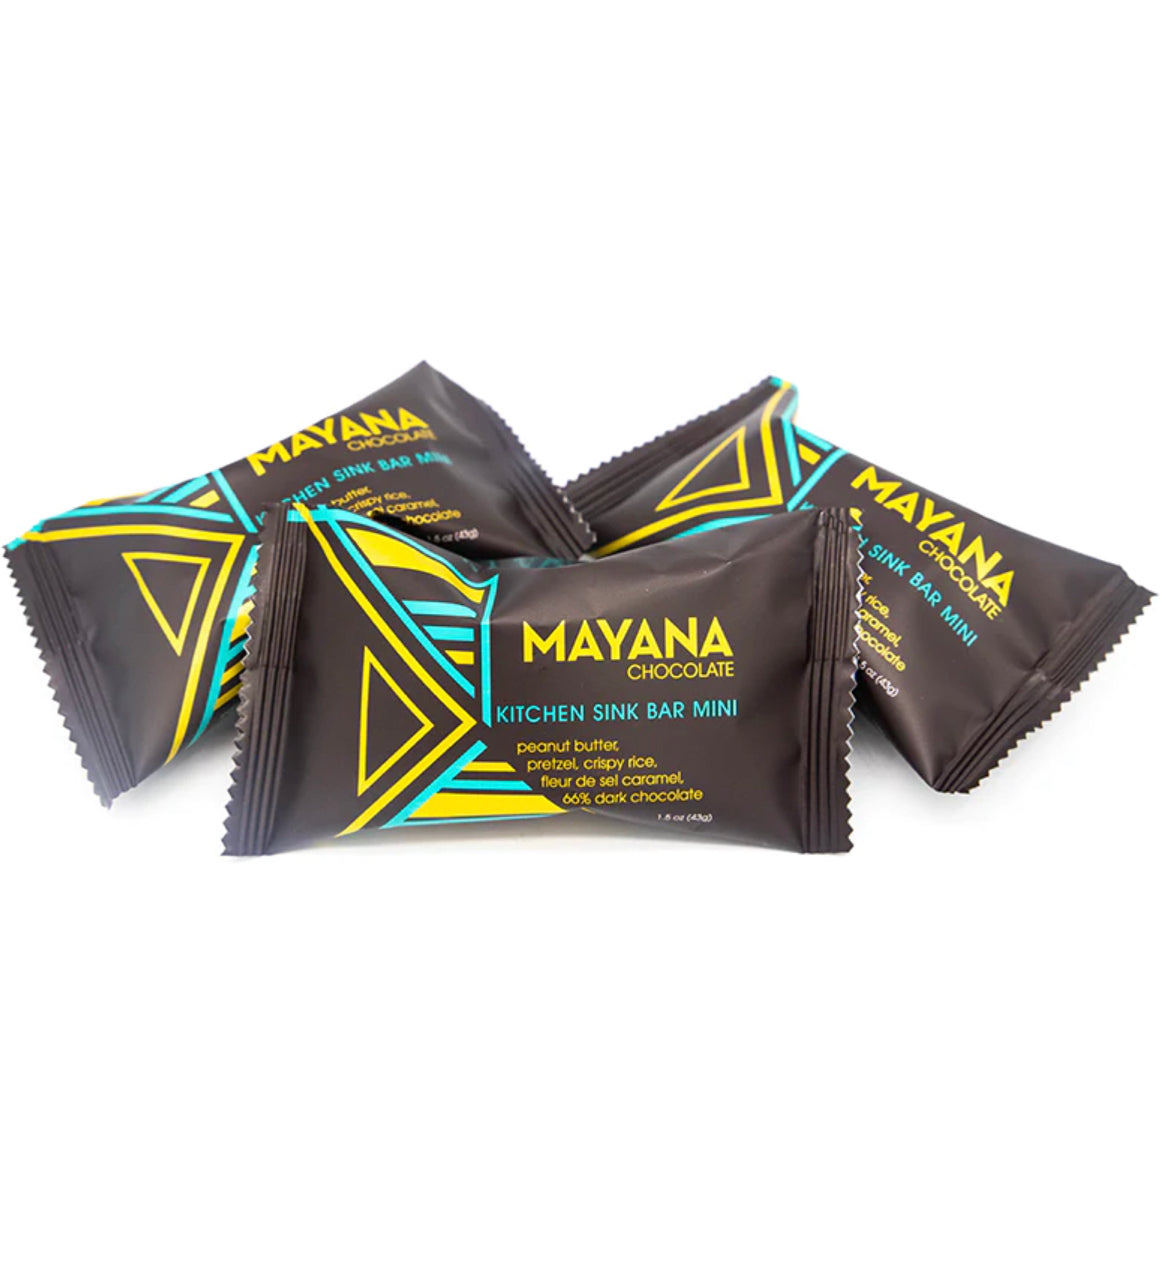 Mayana Mini Chocolate Bar - Kitchen Sink